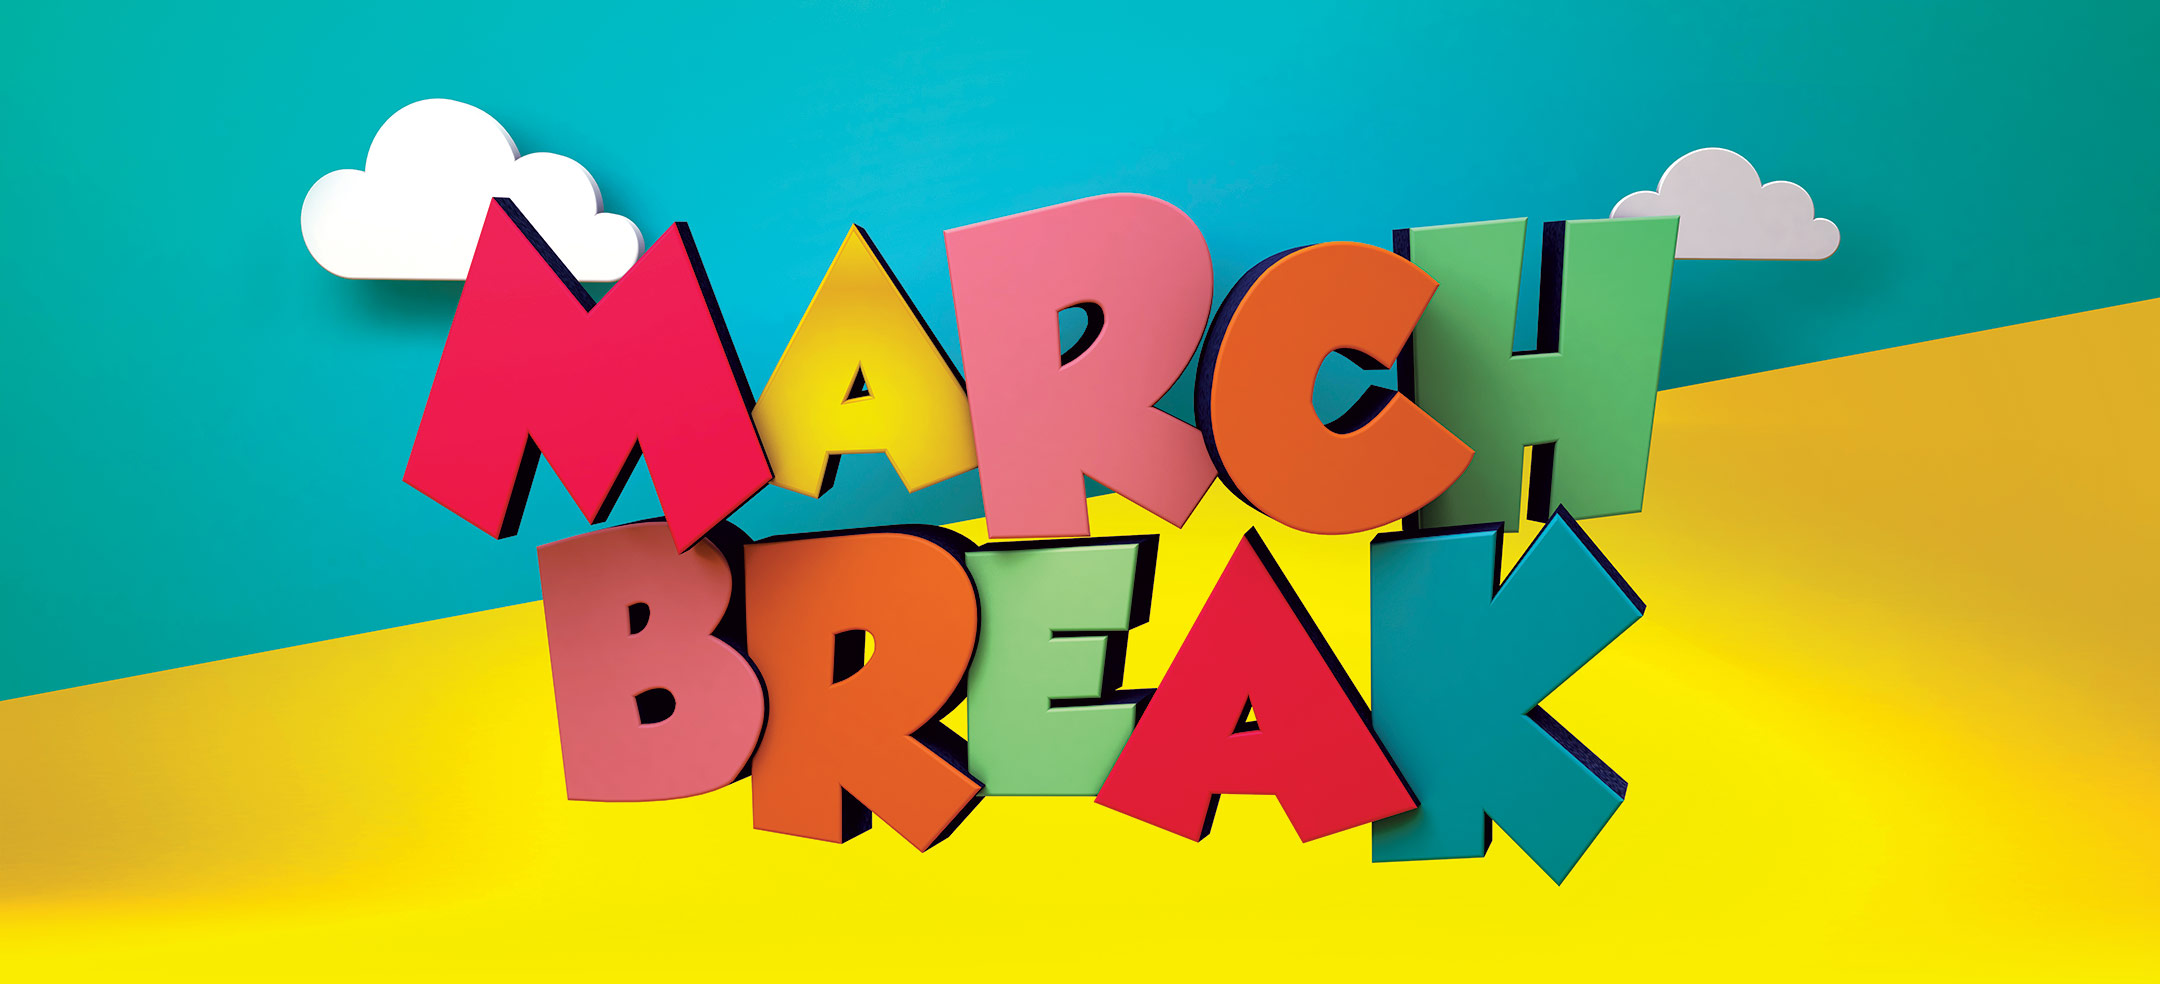 Break clipart march break, Picture #124393 break clipart march break